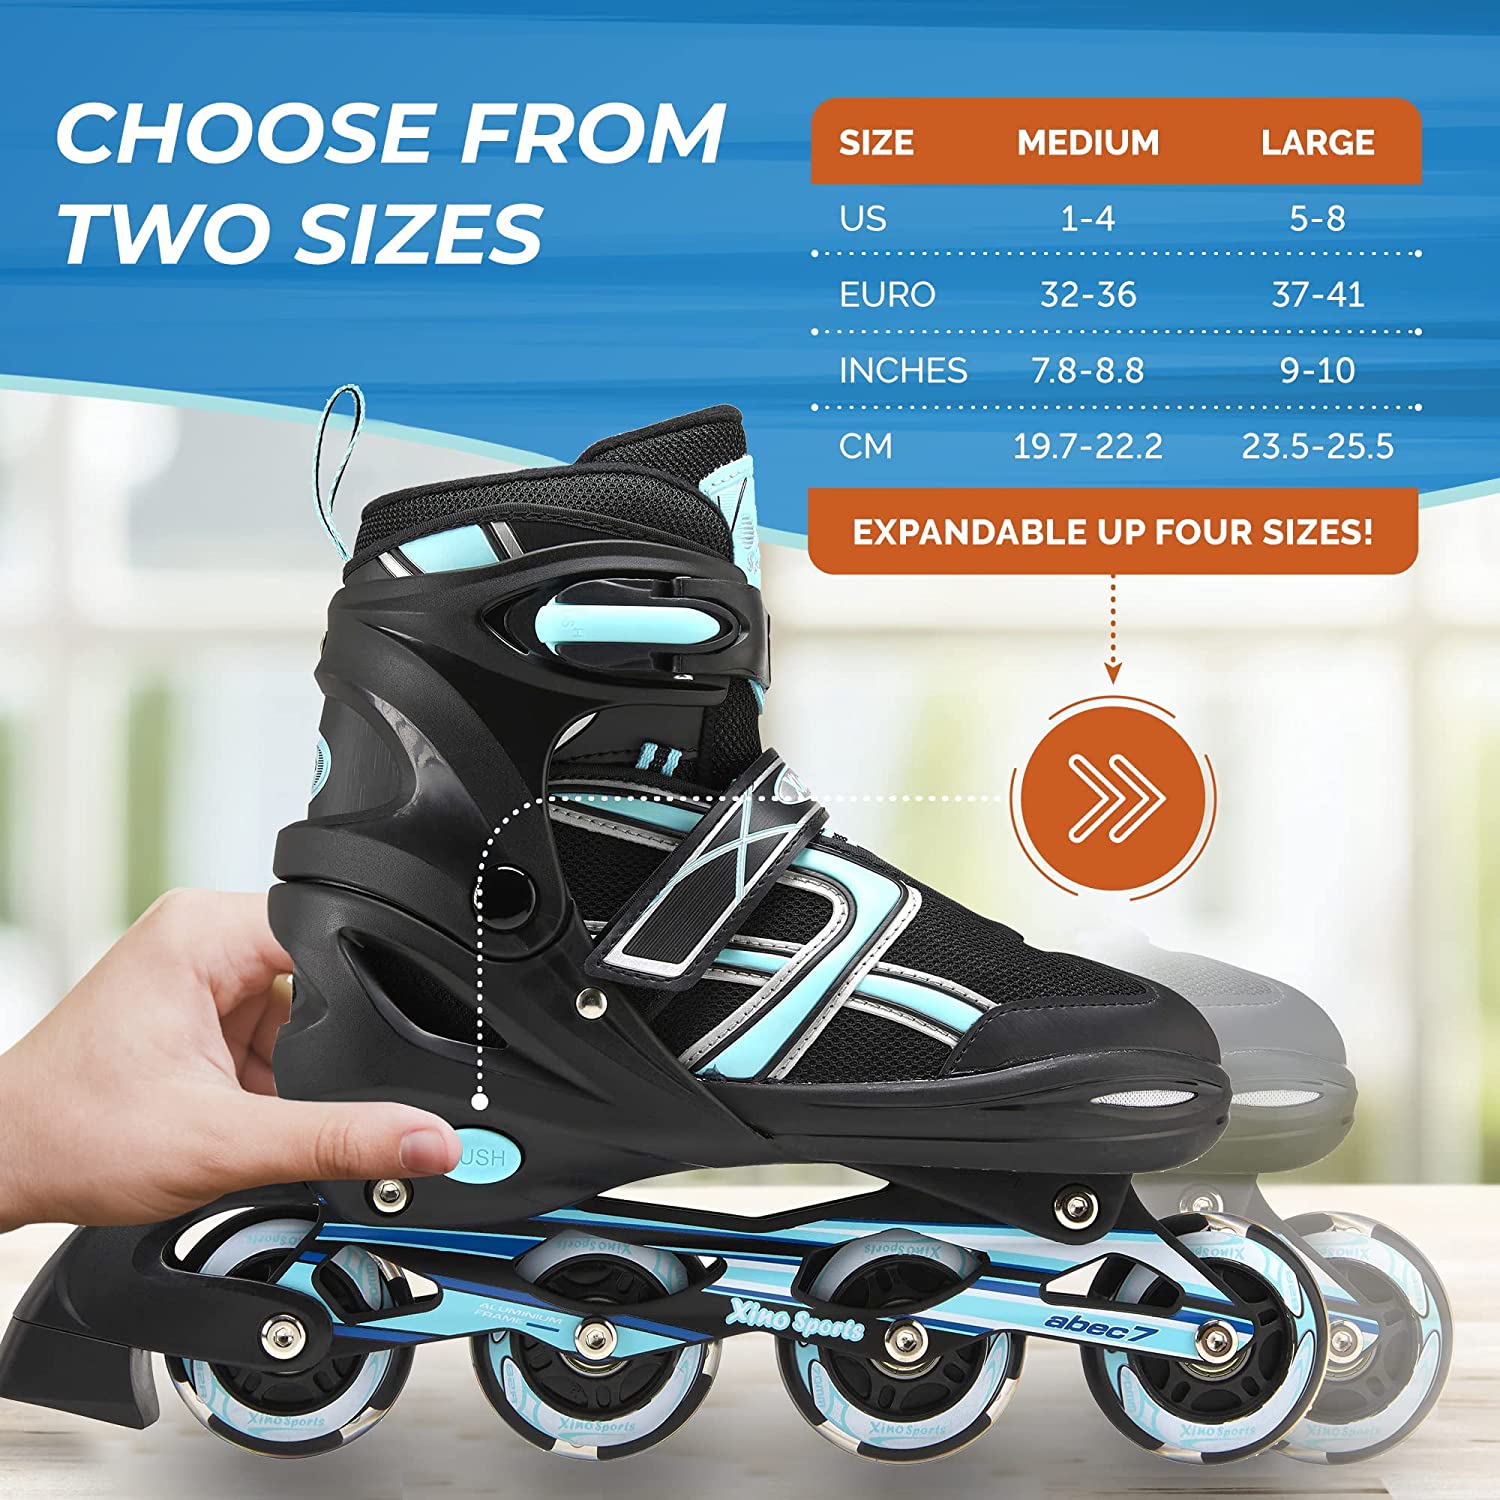 Roller Skates for Girls Boys and Kids, 4 Size Adjustable Toddler Roller  Skates